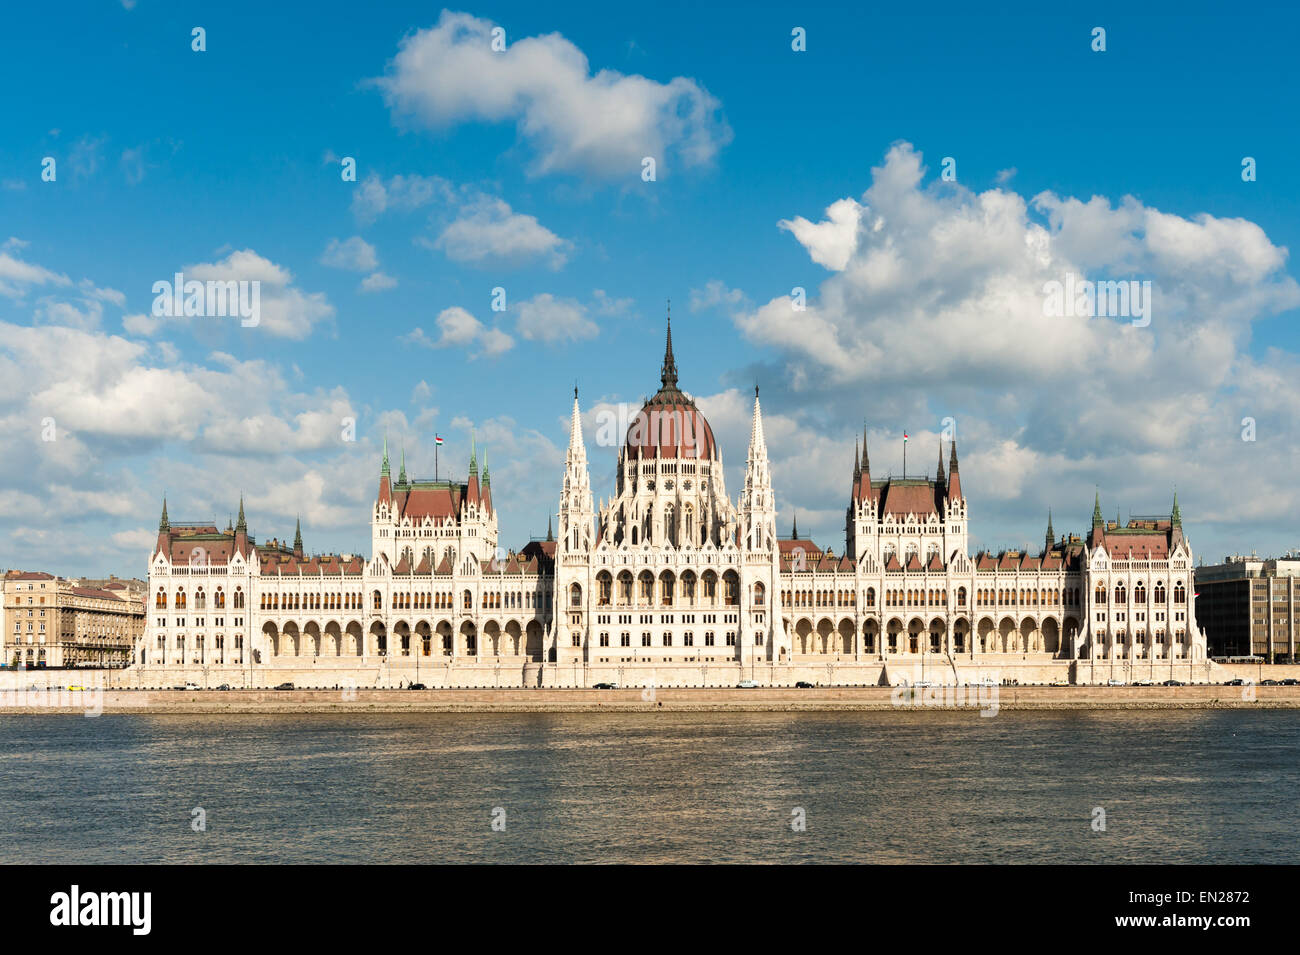 La Hongrie, Budapest, vue extérieure du bâtiment du parlement hongrois Banque D'Images